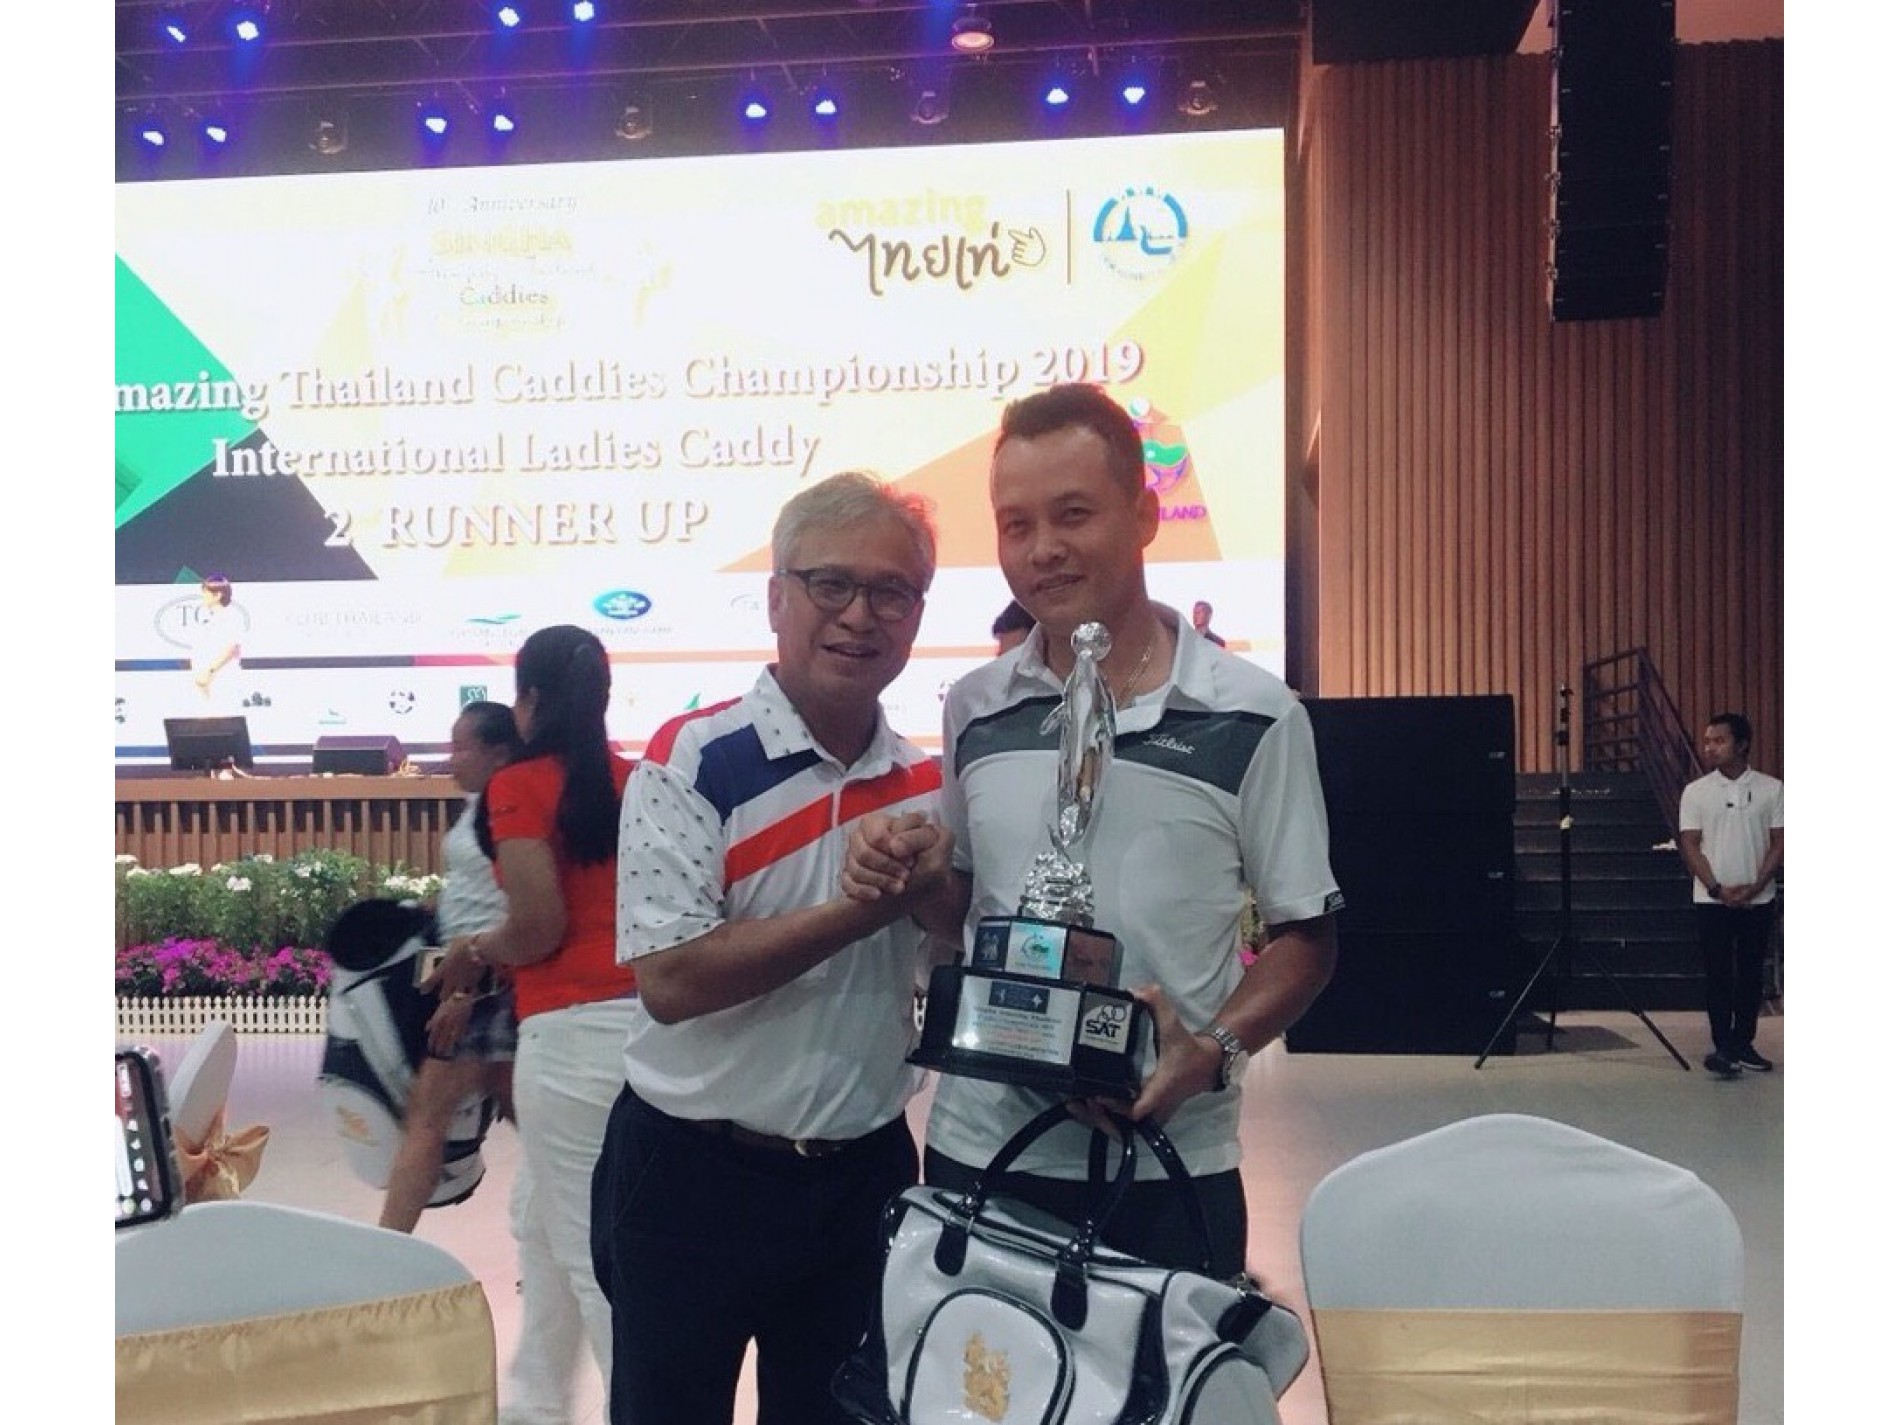 Nguyễn Chí Thanh chụp cùng Trưởng BTC giải Singha Amazing Thailand Caddies Championship